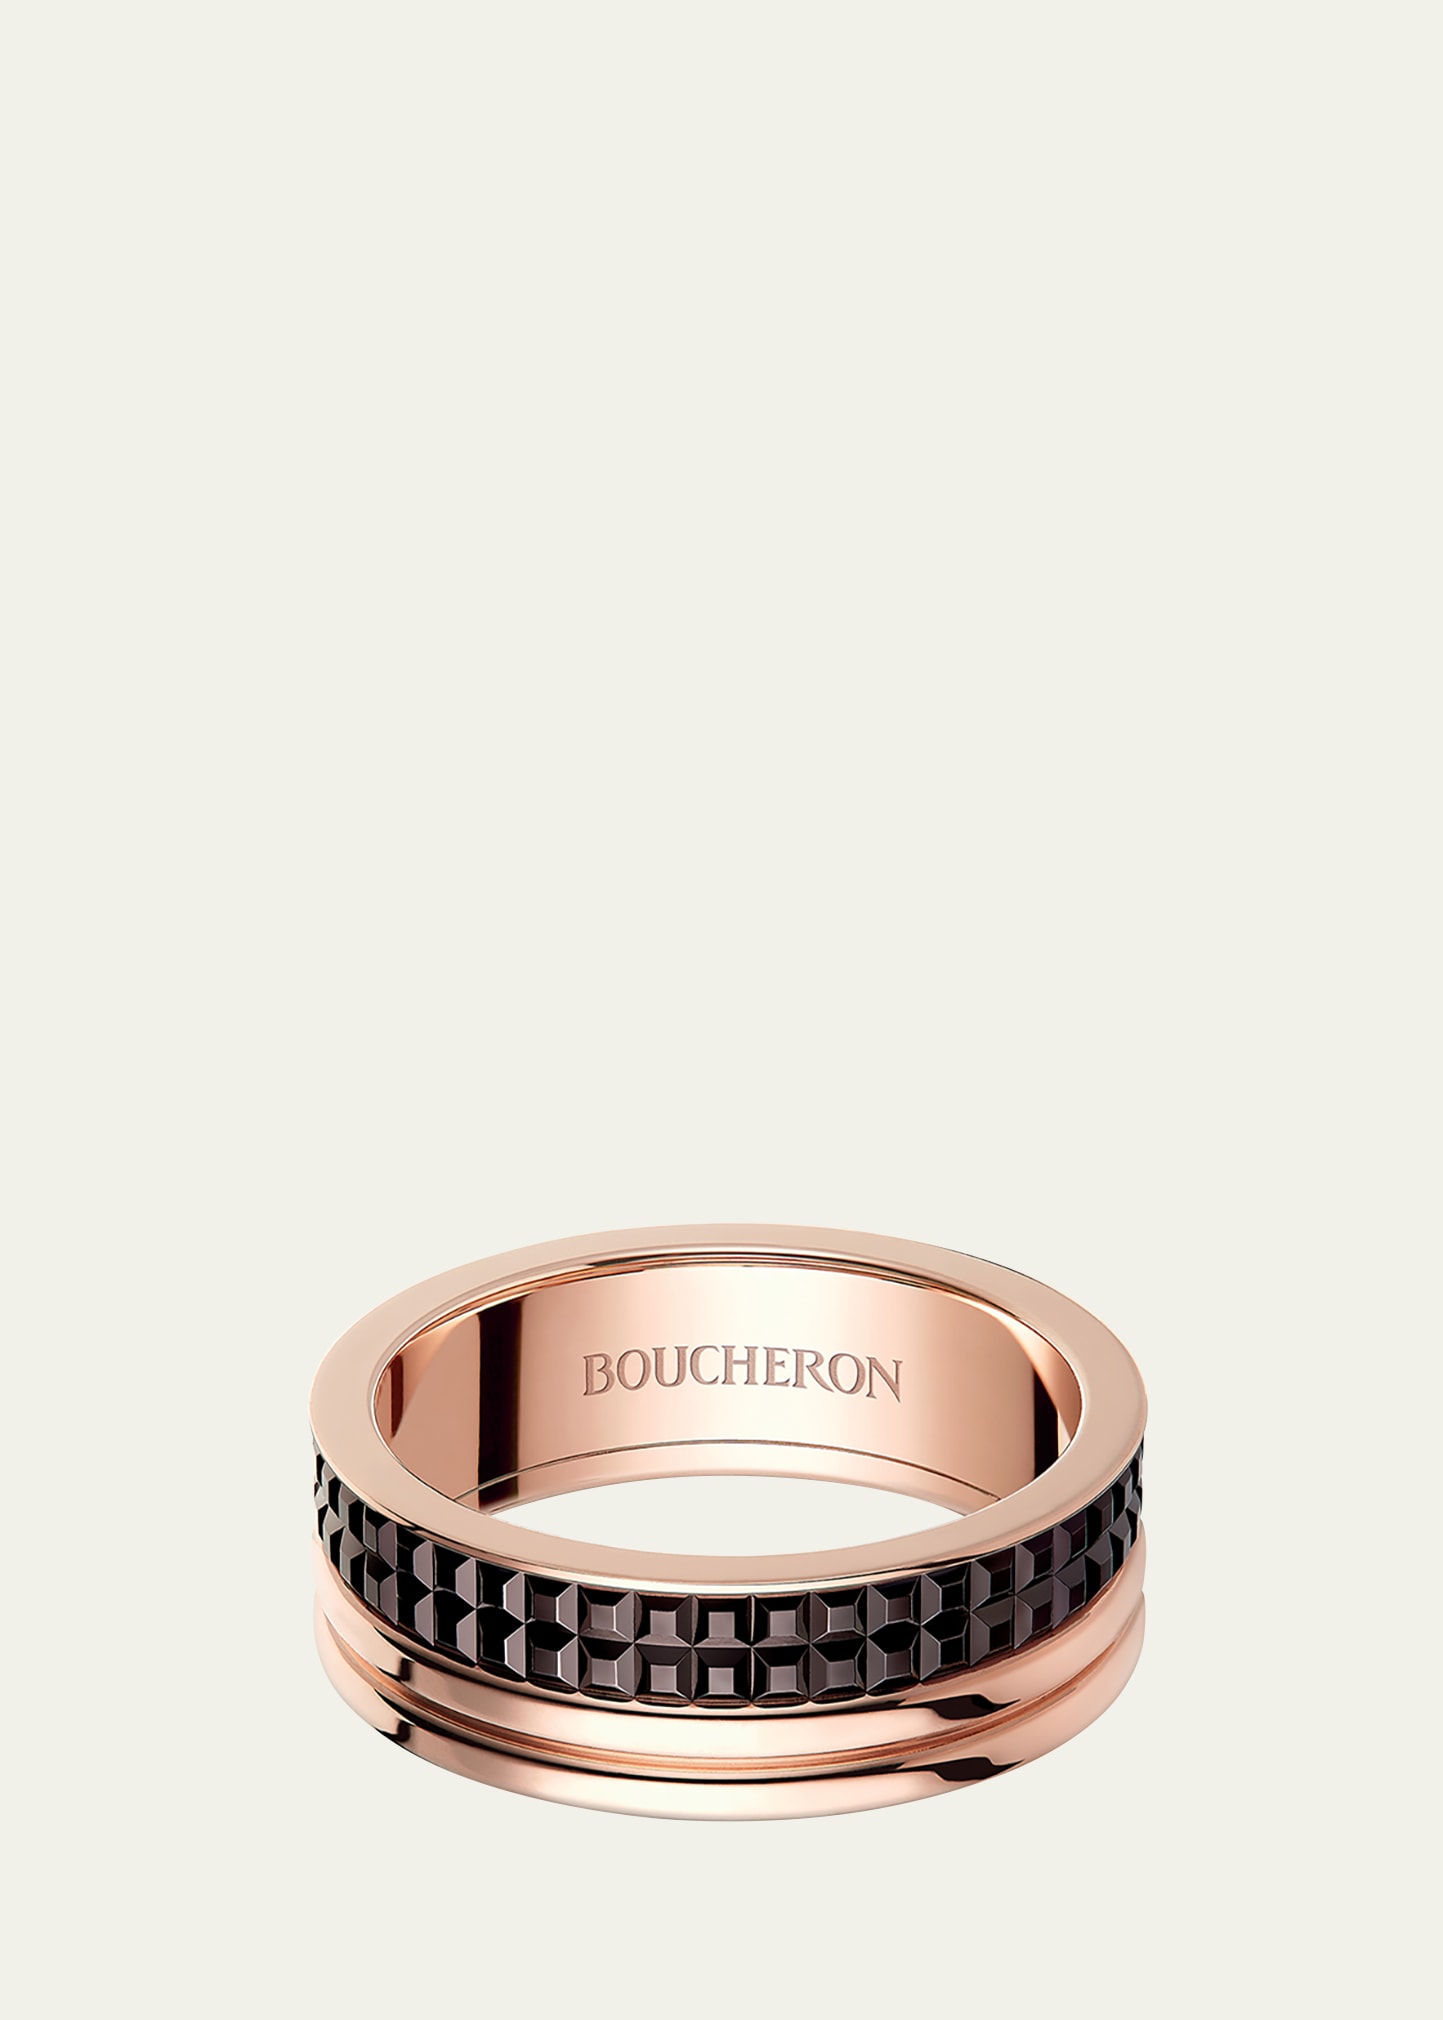 Boucheron Quatre Classique Band Ring, Large Model